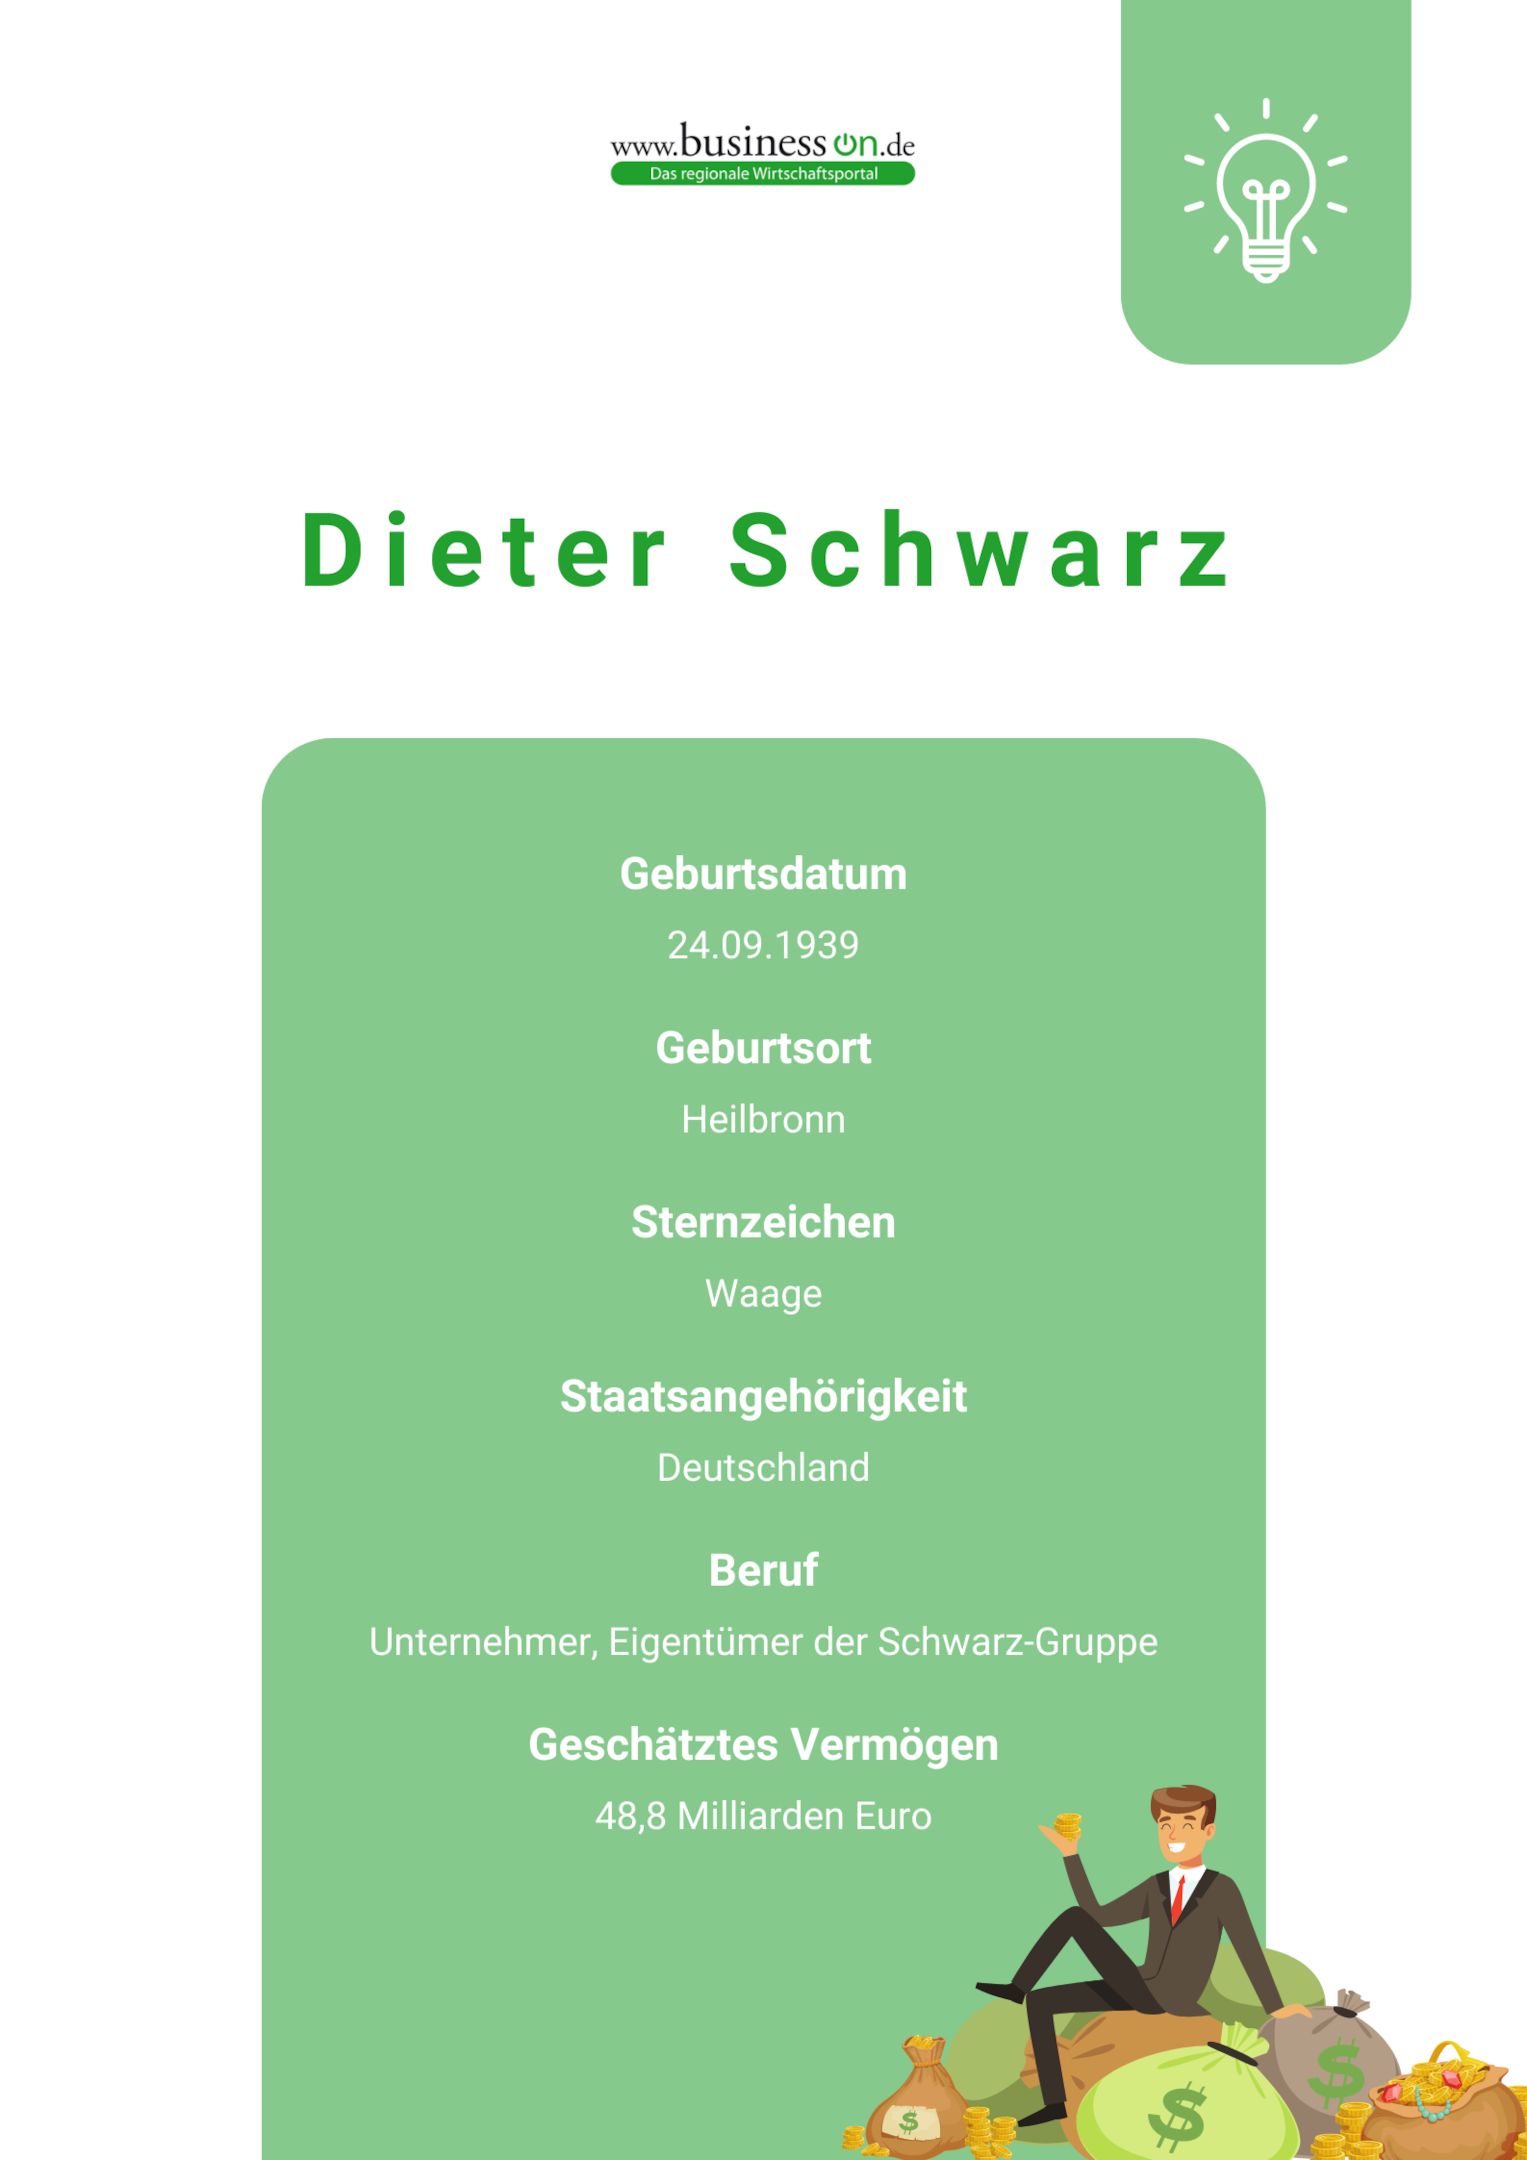 Wie reich ist Dieter Schwarz?